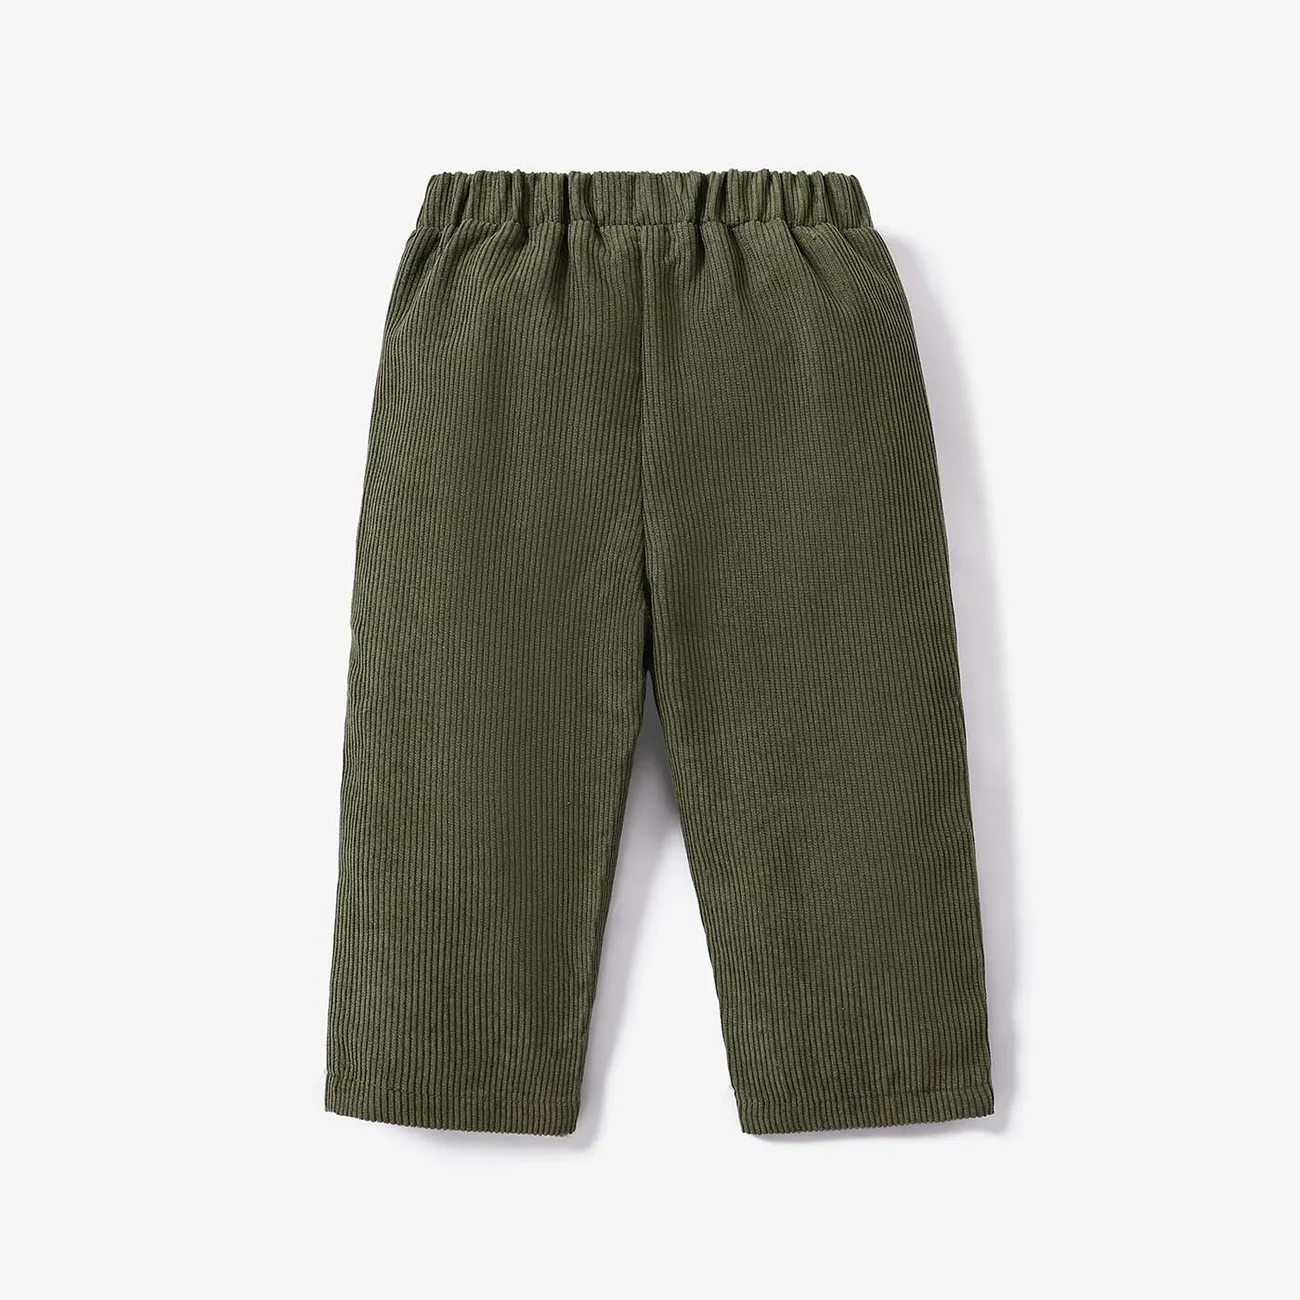 pantalon coupe droite bébé garçon en velours côtelé uni Armée Verte big image 1